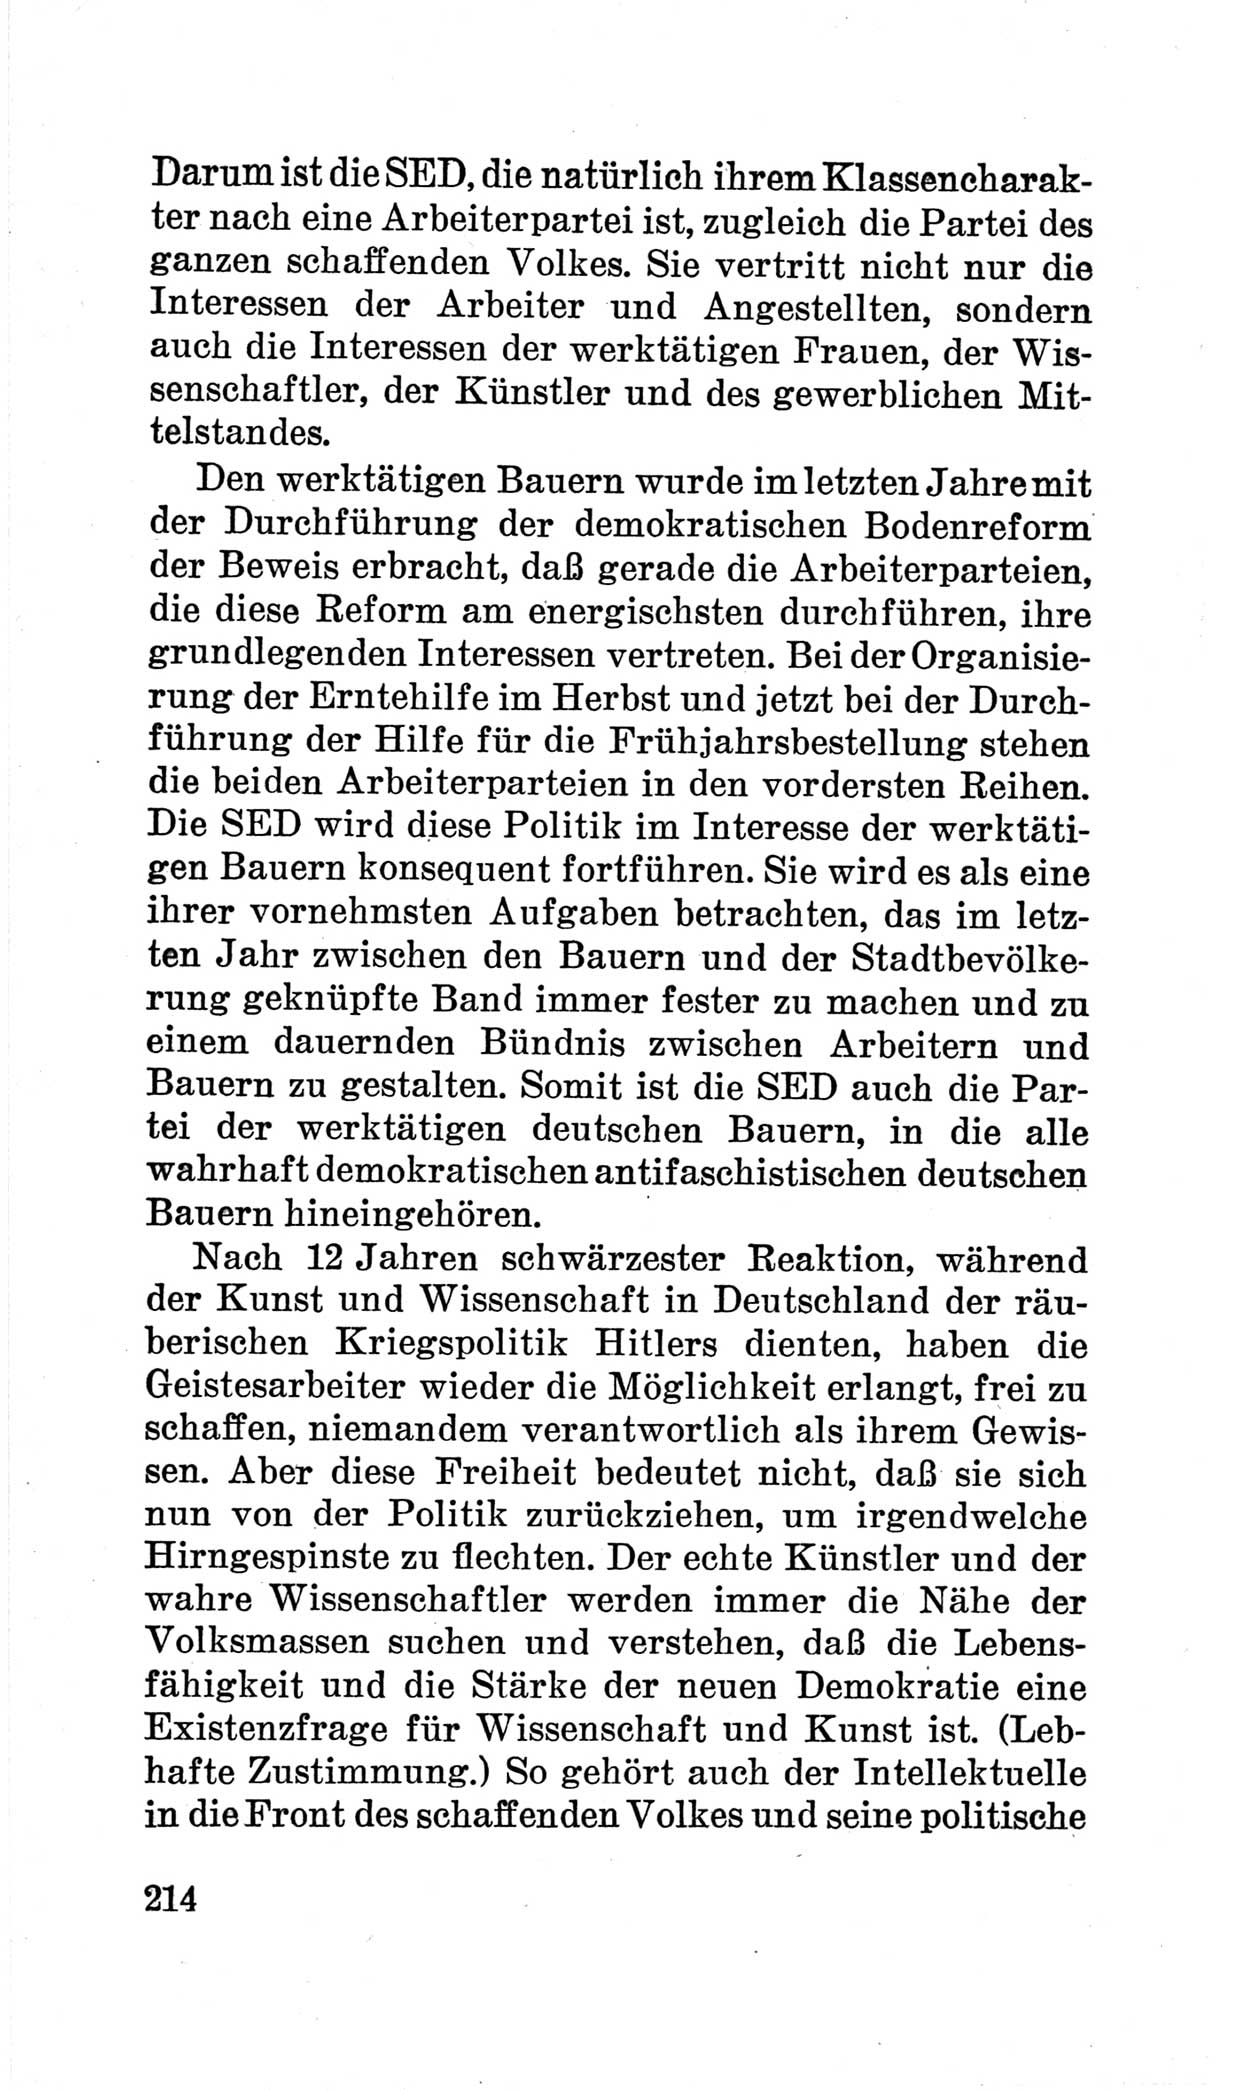 Bericht über die Verhandlungen des 15. Parteitages der Kommunistischen Partei Deutschlands (KPD) [Sowjetische Besatzungszone (SBZ) Deutschlands] am 19. und 20. April 1946 in Berlin, Seite 214 (Ber. Verh. 15. PT KPD SBZ Dtl. 1946, S. 214)